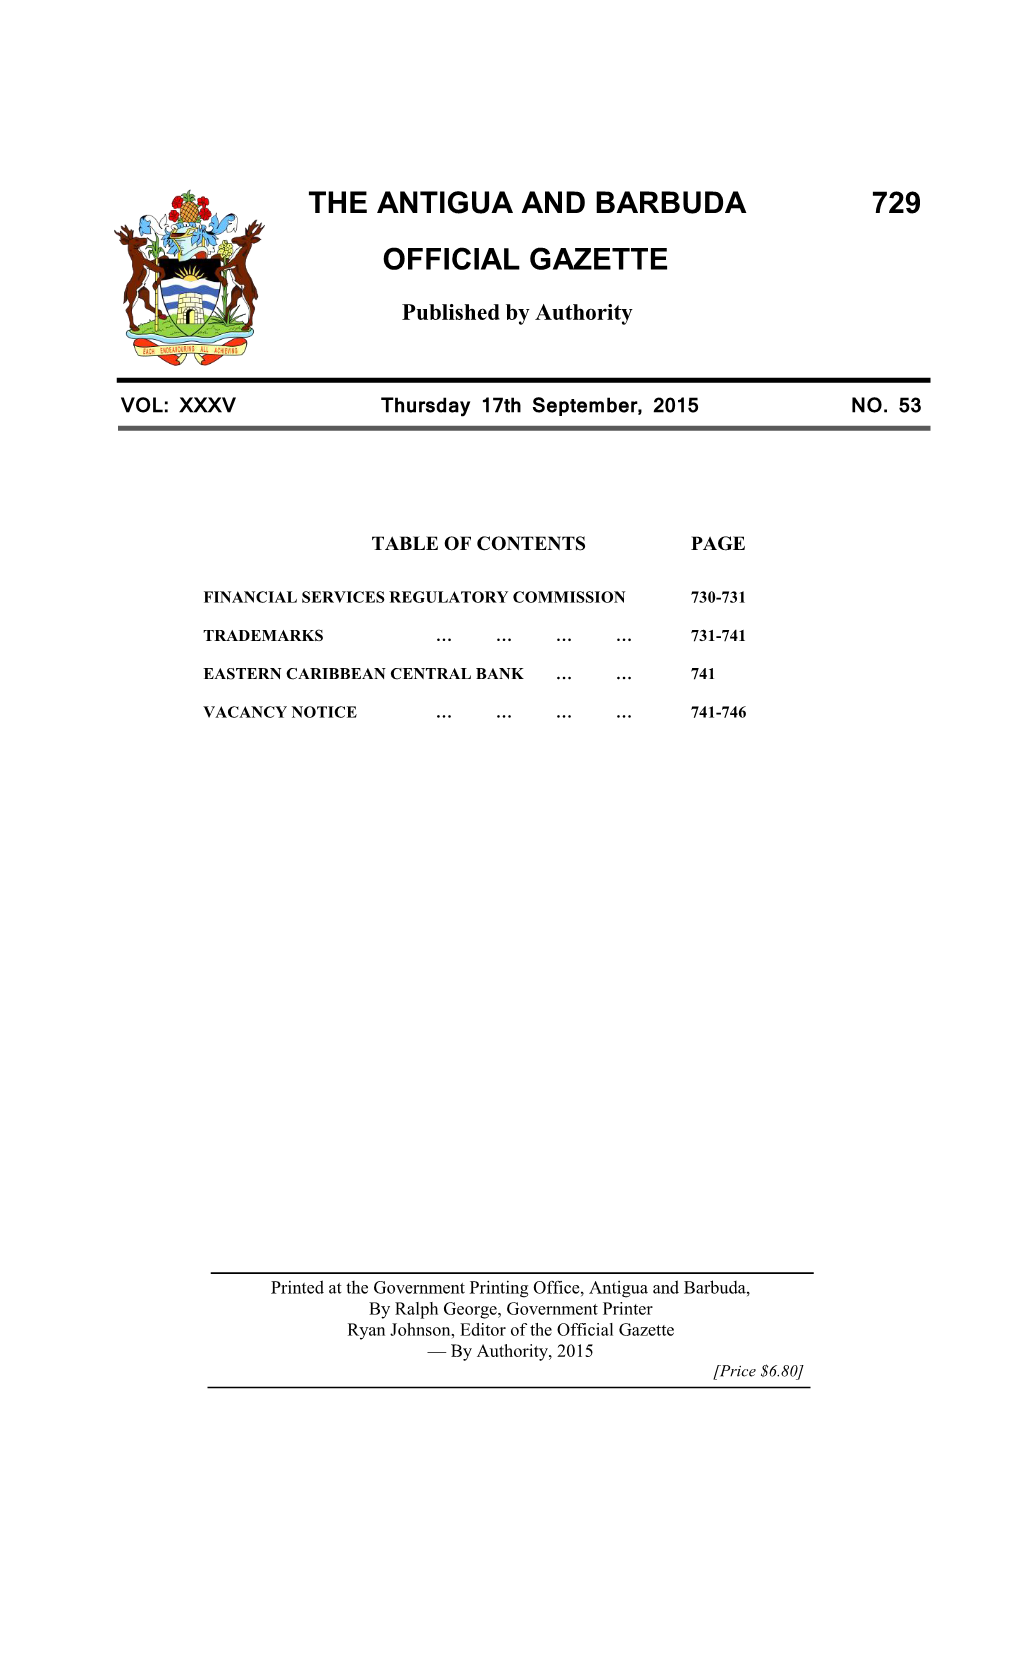 The Antigua and Barbuda Official Gazette